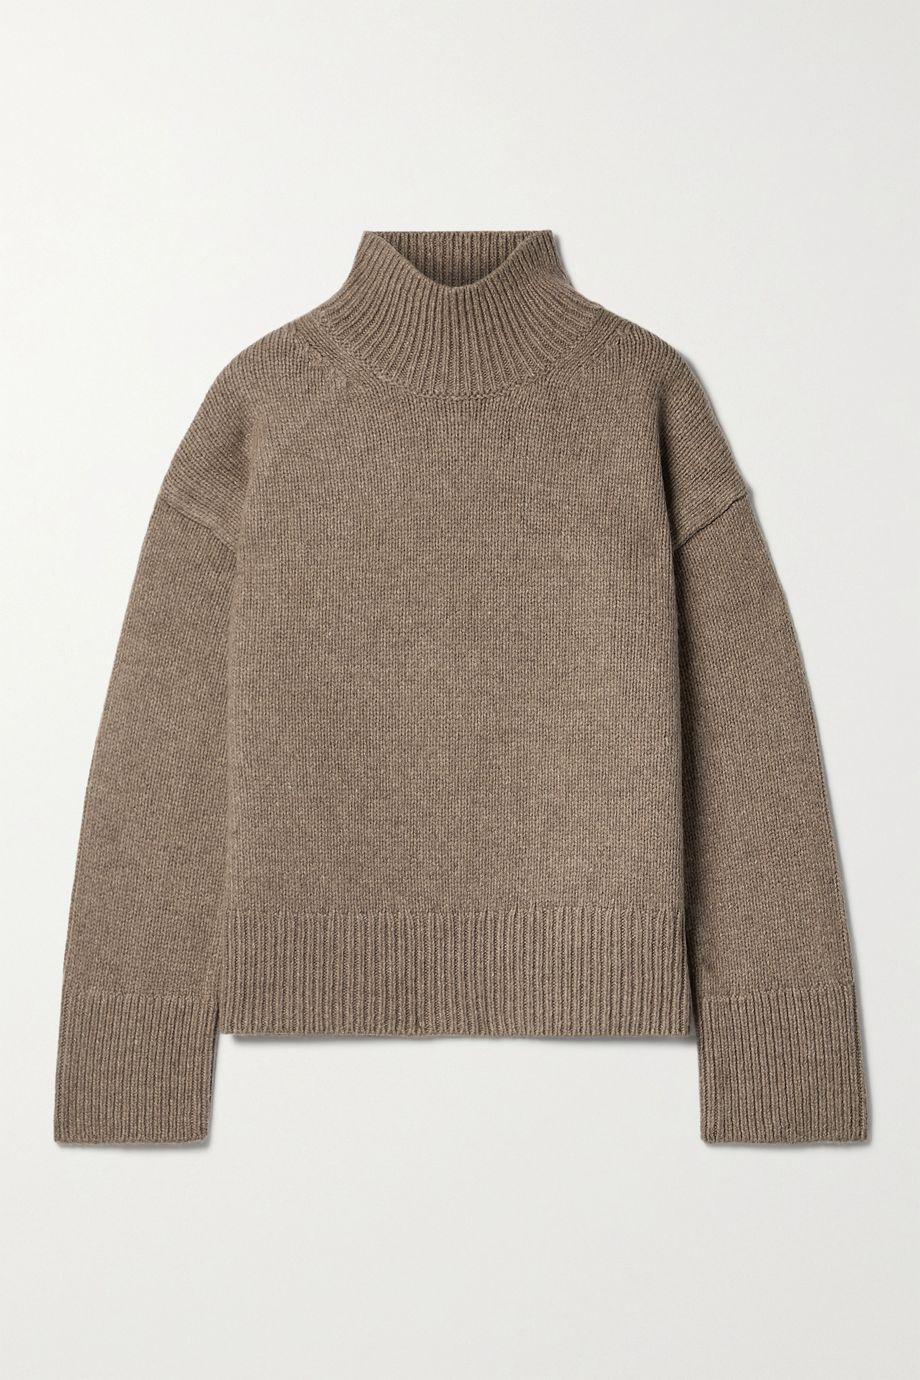 Betty wool-blend turtleneck sweater by ALEX MILL